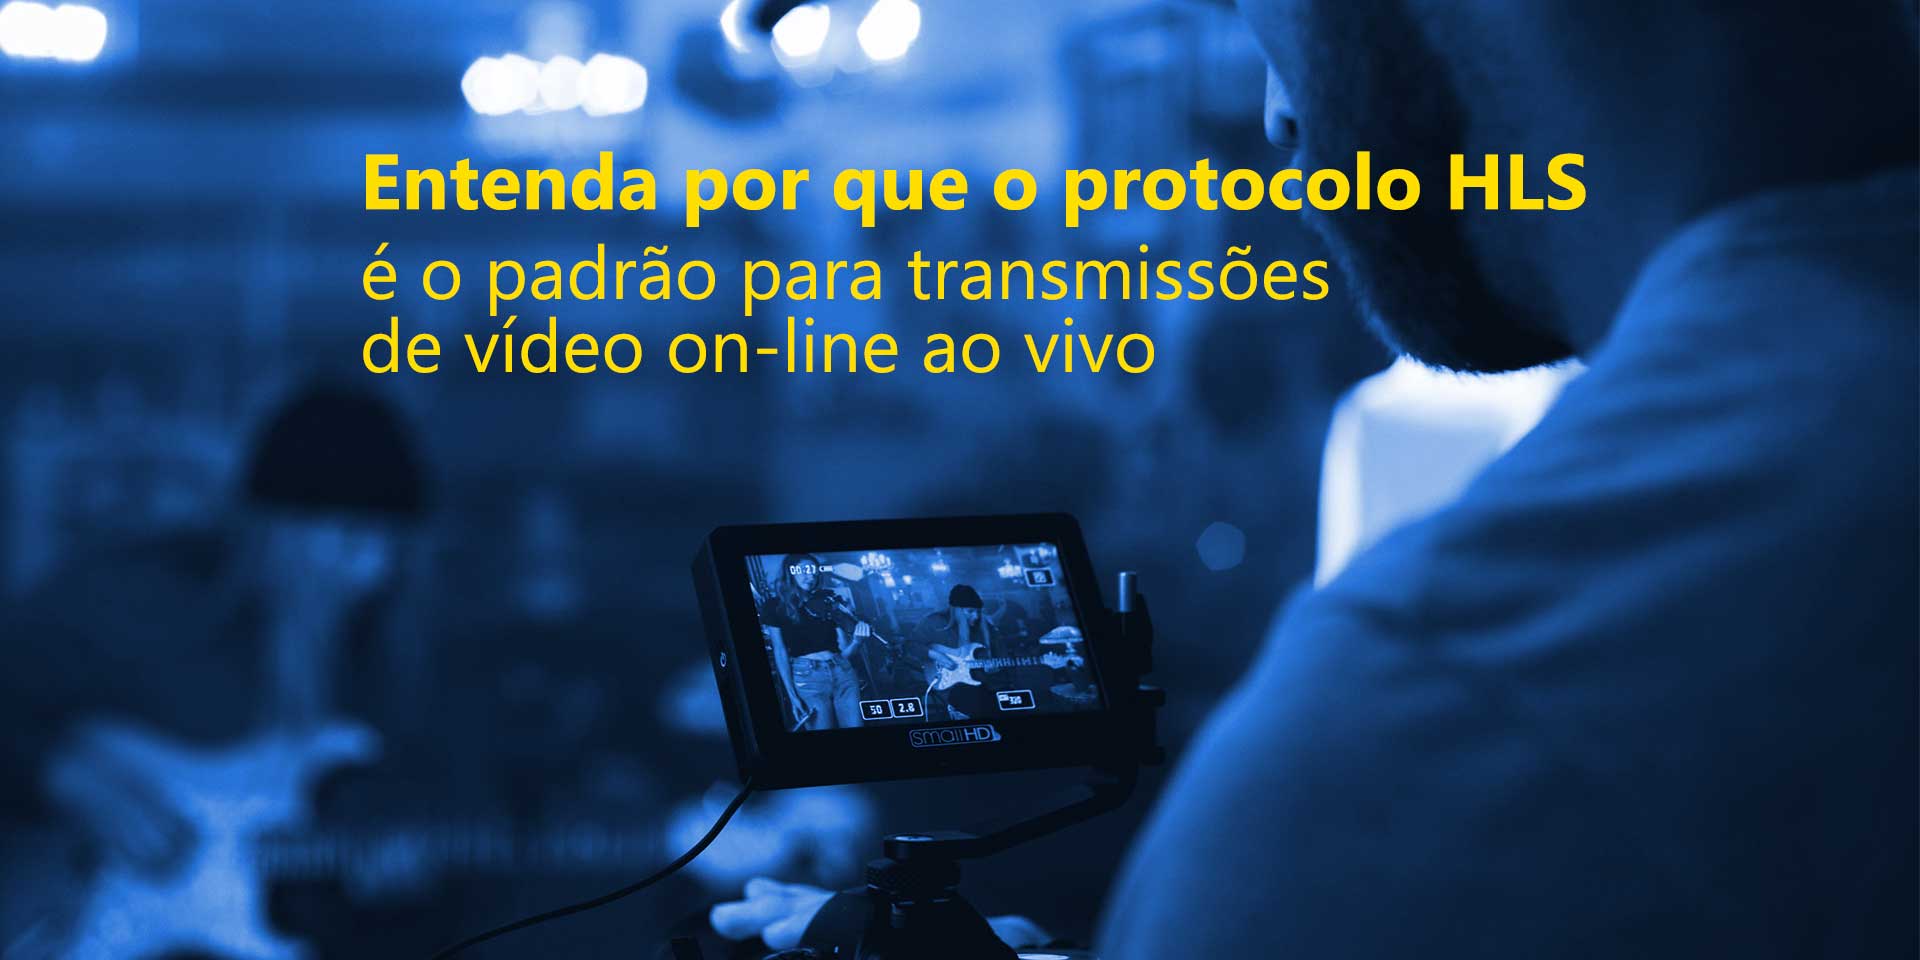 O protocolo HLS é o padrão vigente para streaming de vídeo